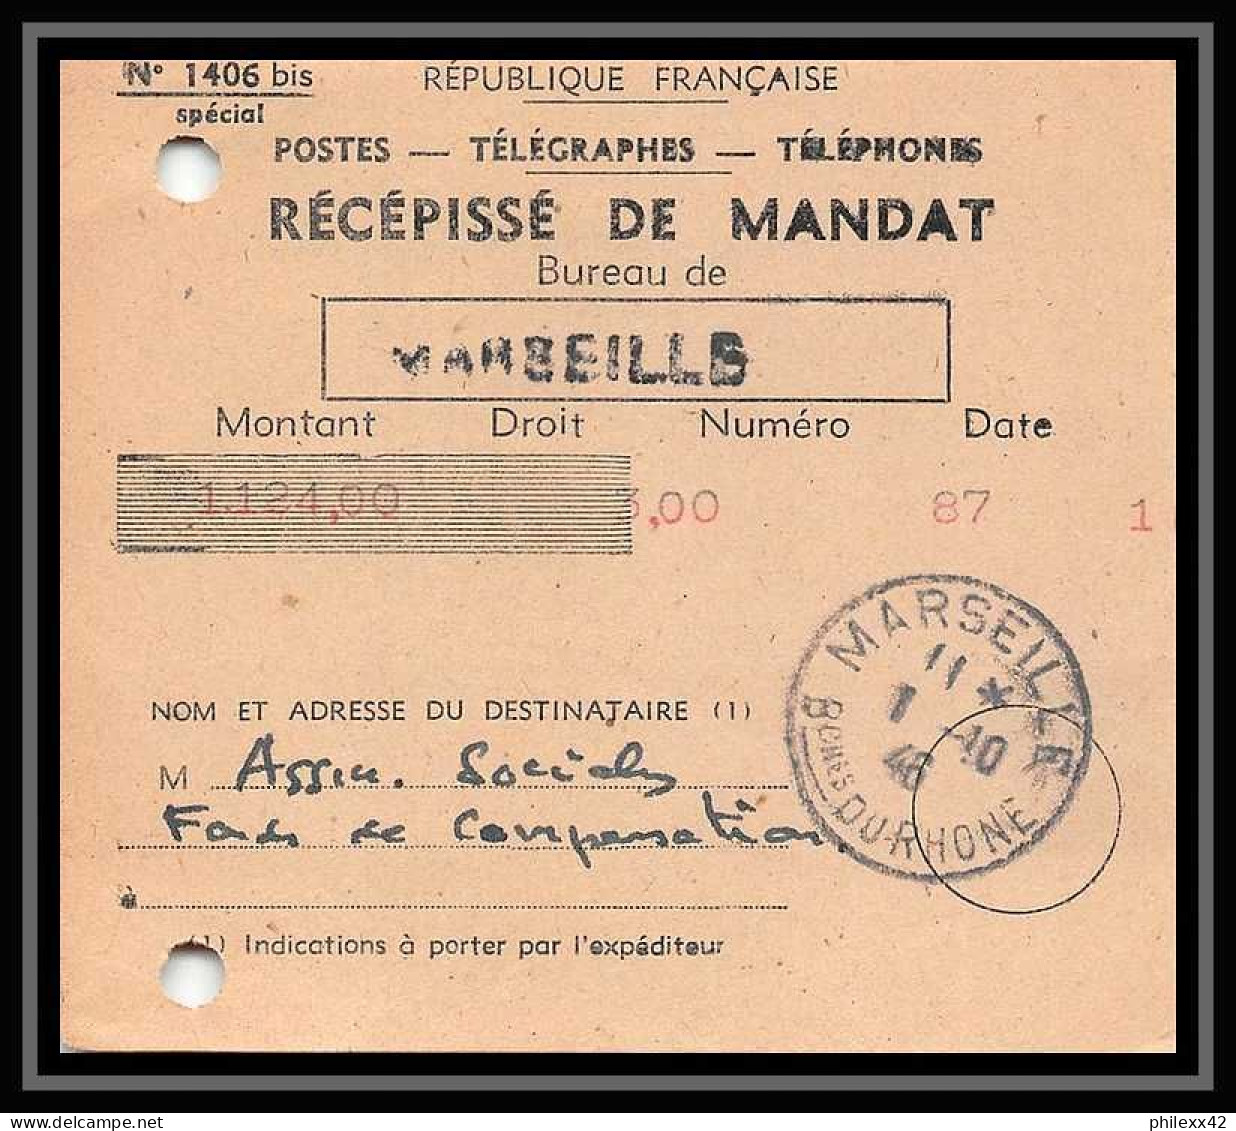 115306 lot de 13 Lettres cover Carte postale (postcard) avis de reception Bouches du rhone Marseille A4